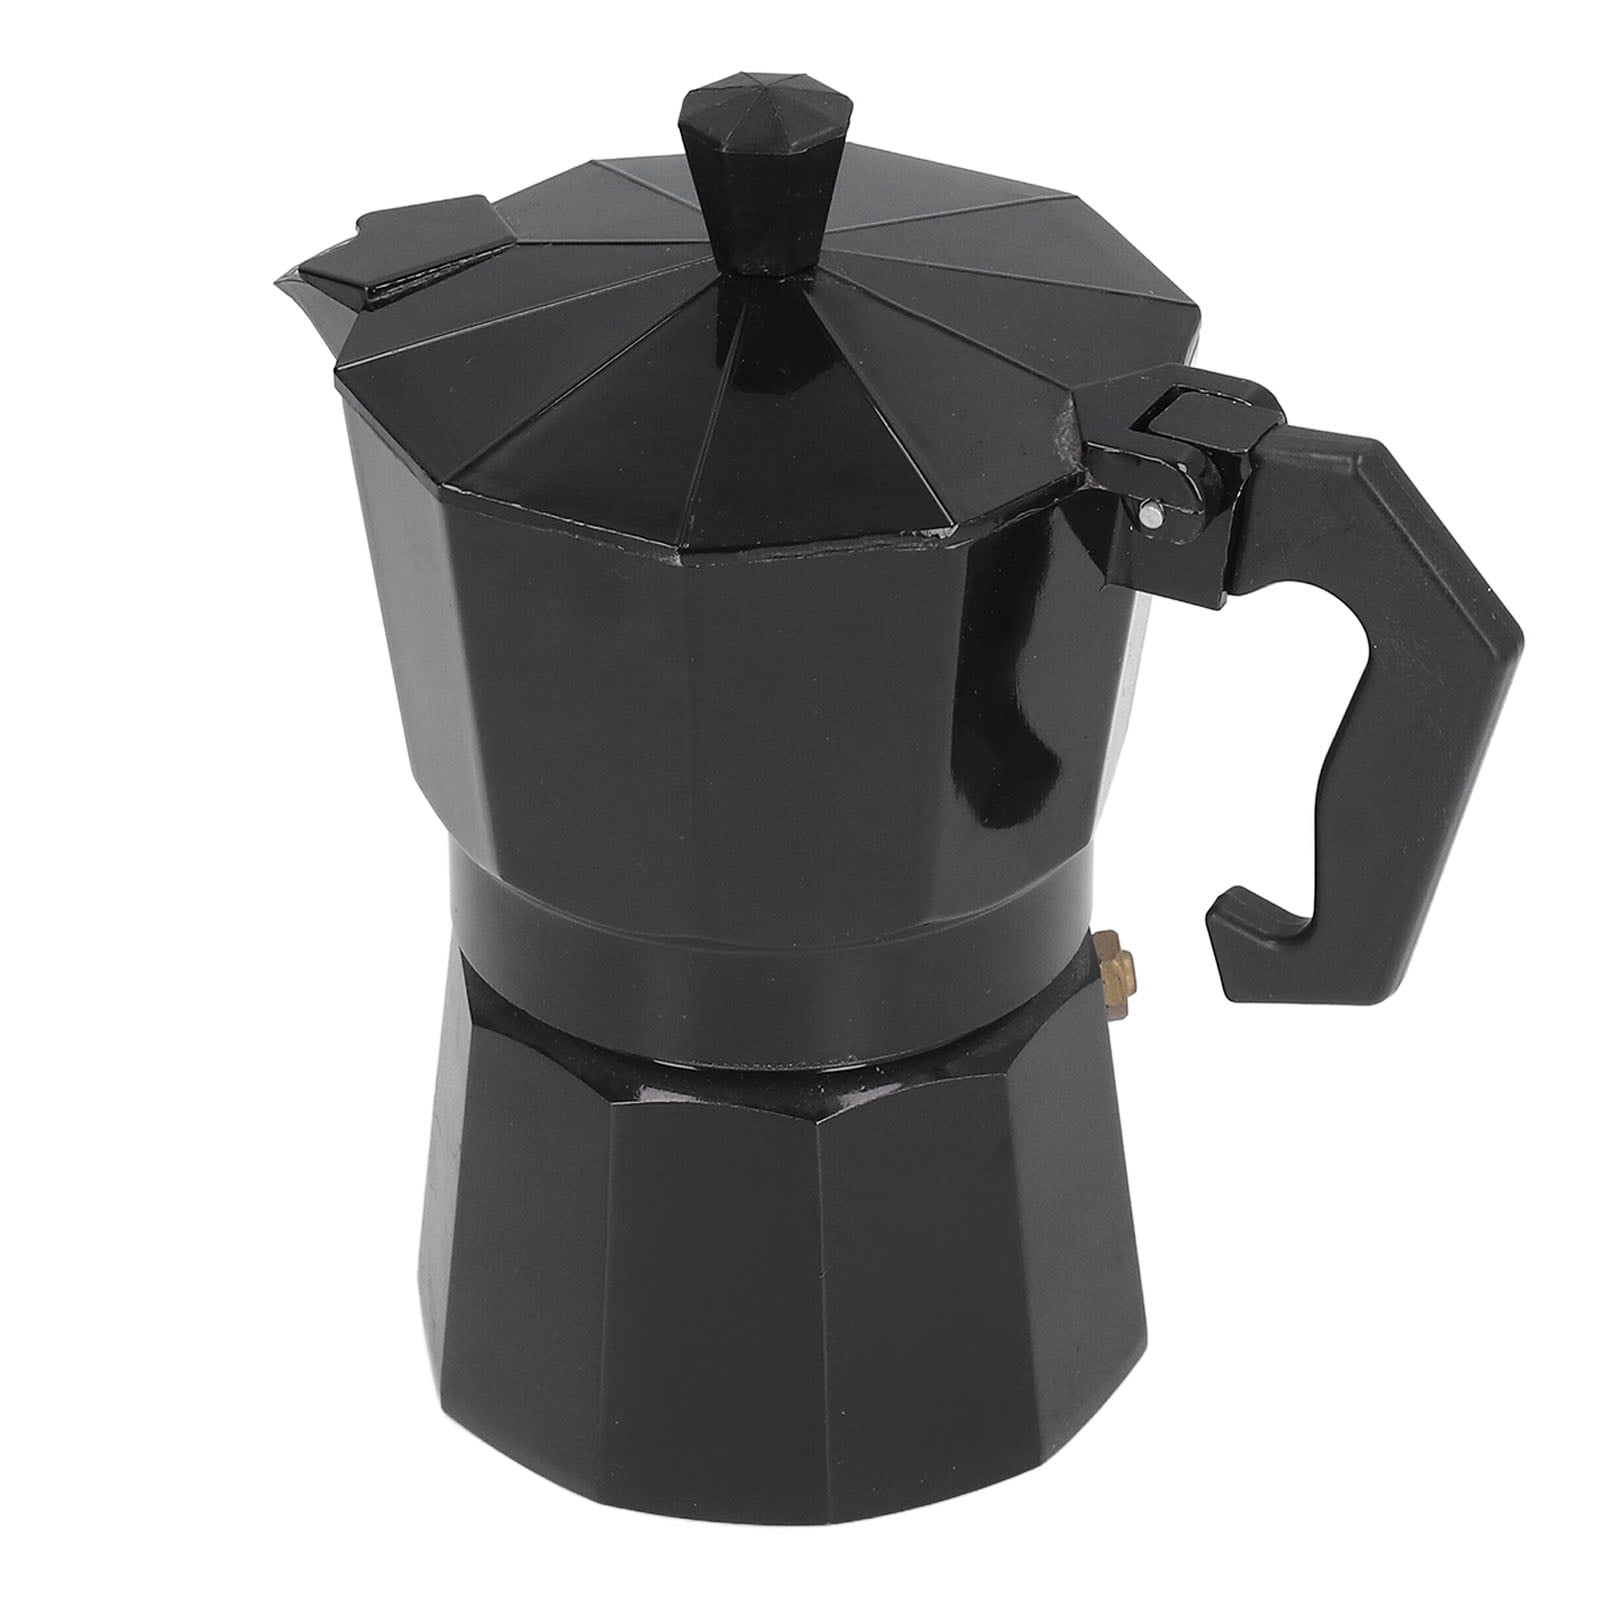 Caffettiera Moka 3 Cup Coffee Espresso Maker, Stovetop, New